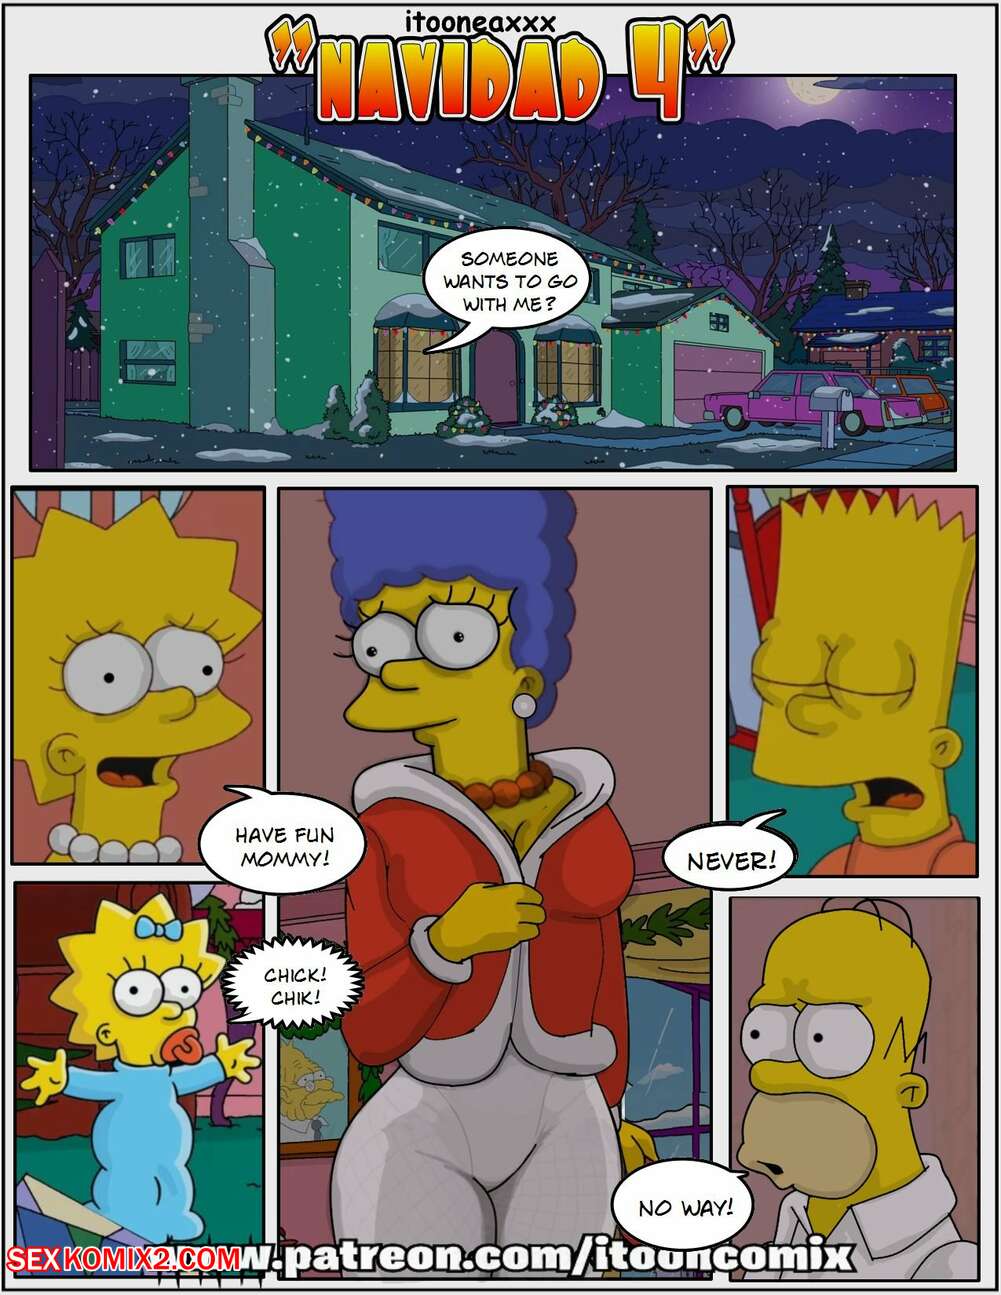 Cartoon Simpson Toons - âœ…ï¸ Porn comic Simpsons Comics. Navidad 4. IToonEAXXX. Sex comic MILF Marge  loves | Porn comics in English for adults only | sexkomix2.com